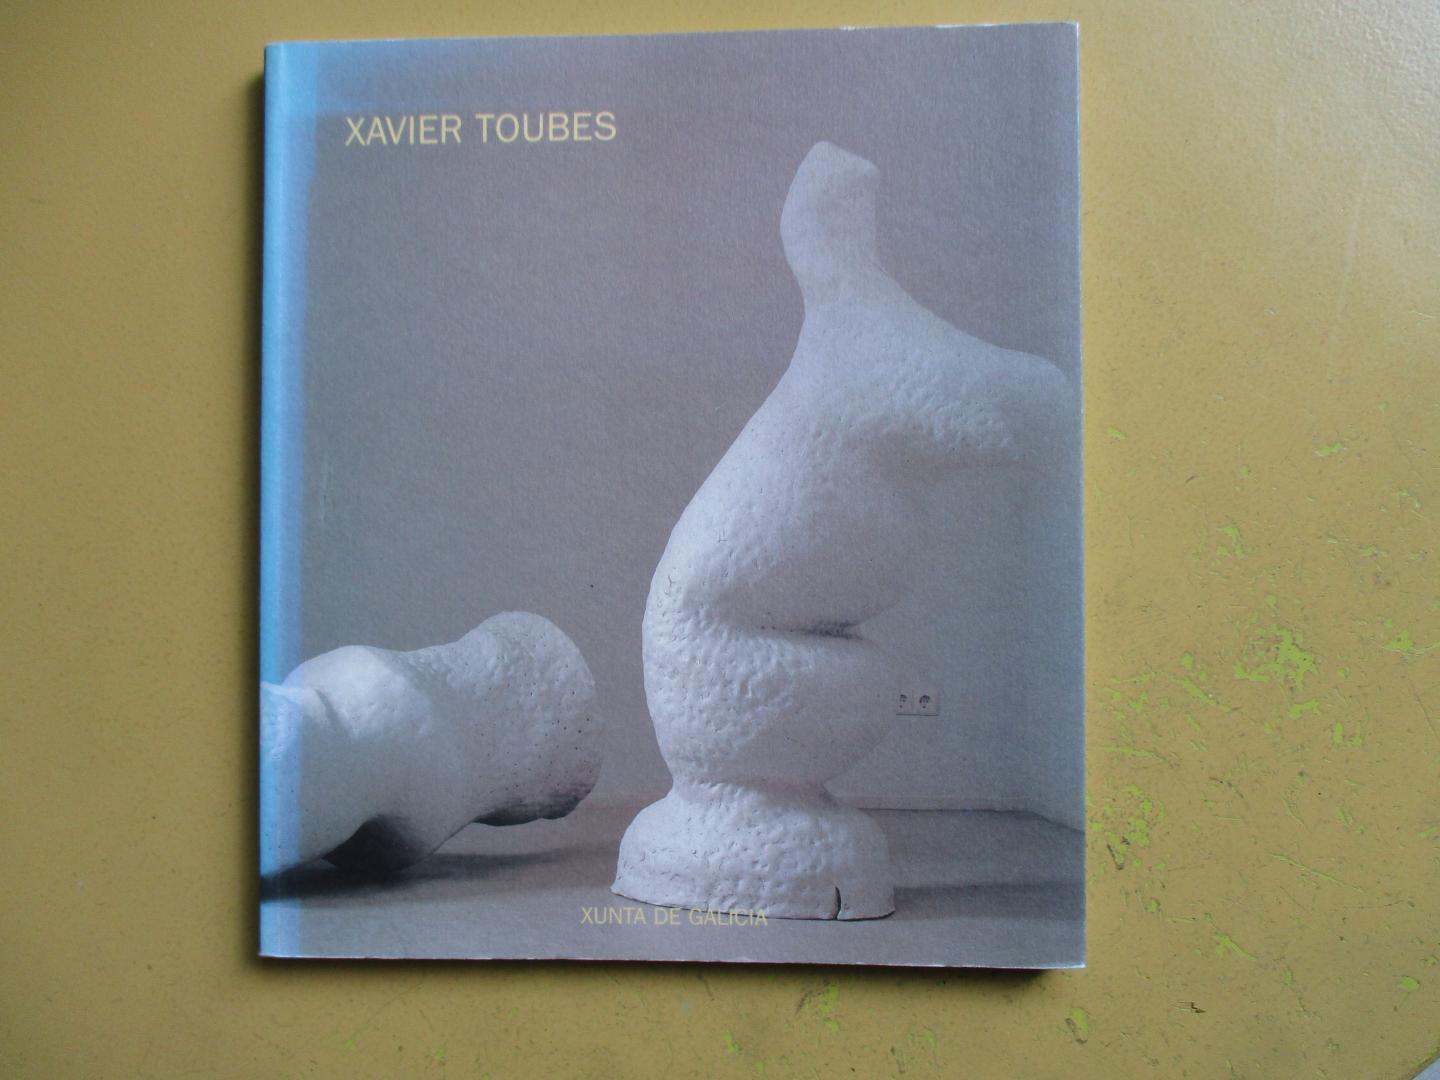 Vaamonde, Dolores Garcia / Blanca Rodriguez Alvariño - XAVIER TOUBES  cerámicas